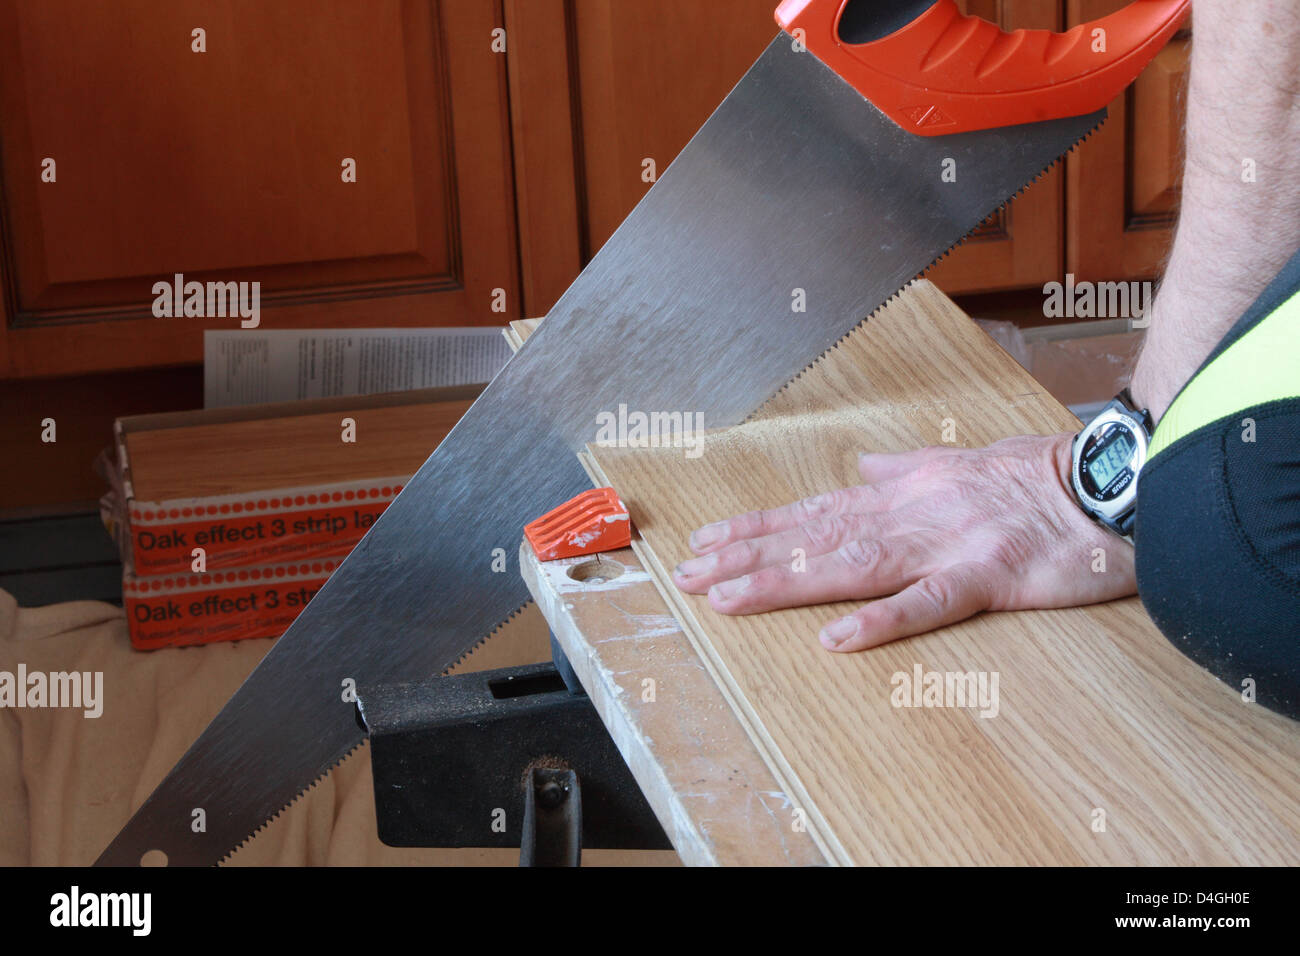 Ein Mann sägt einen Streifen Laminat, der für die Installation eines neuen Bodens bereit ist. Er benutzt eine Handsäge und einen Arbeitskollegen. Stockfoto